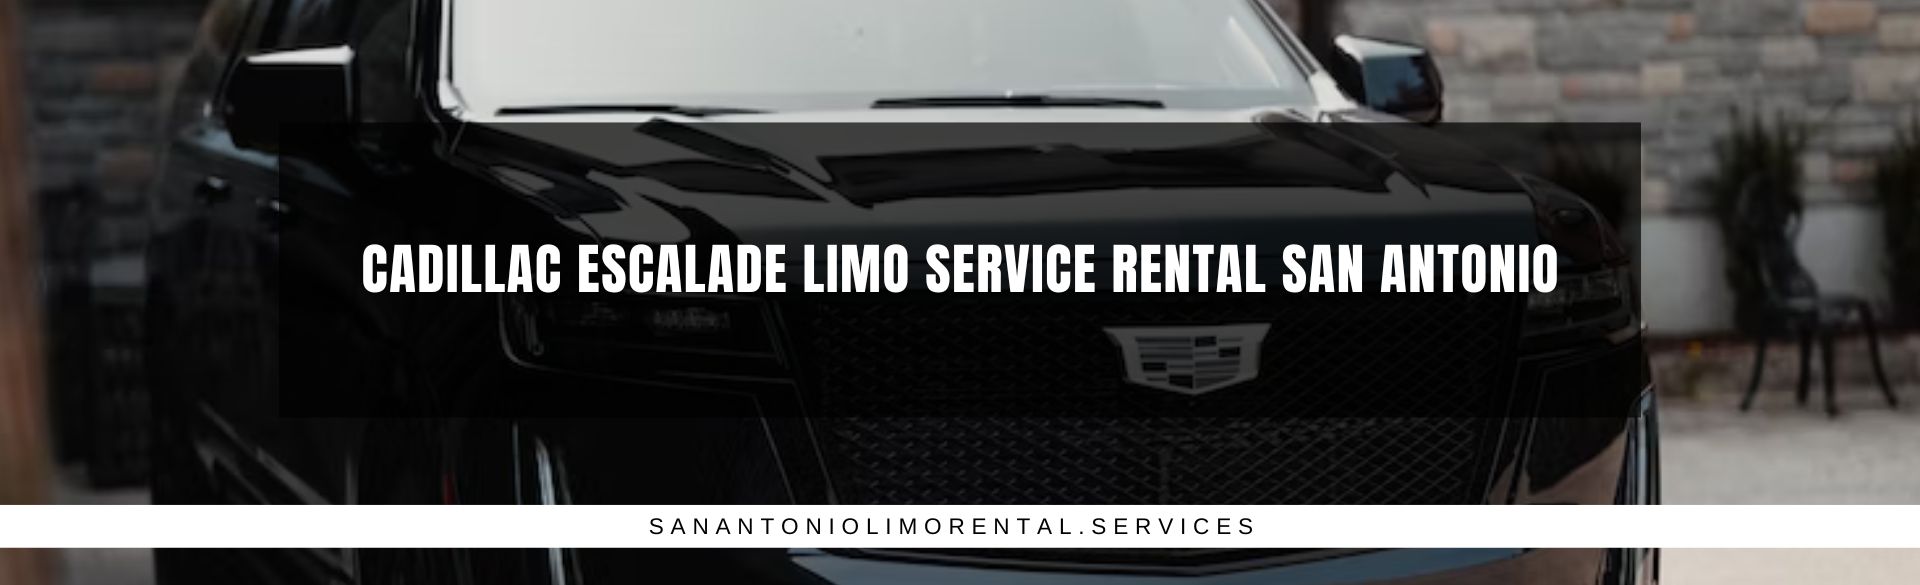 Cadillac Escalade Limo Service Rental San Antonio